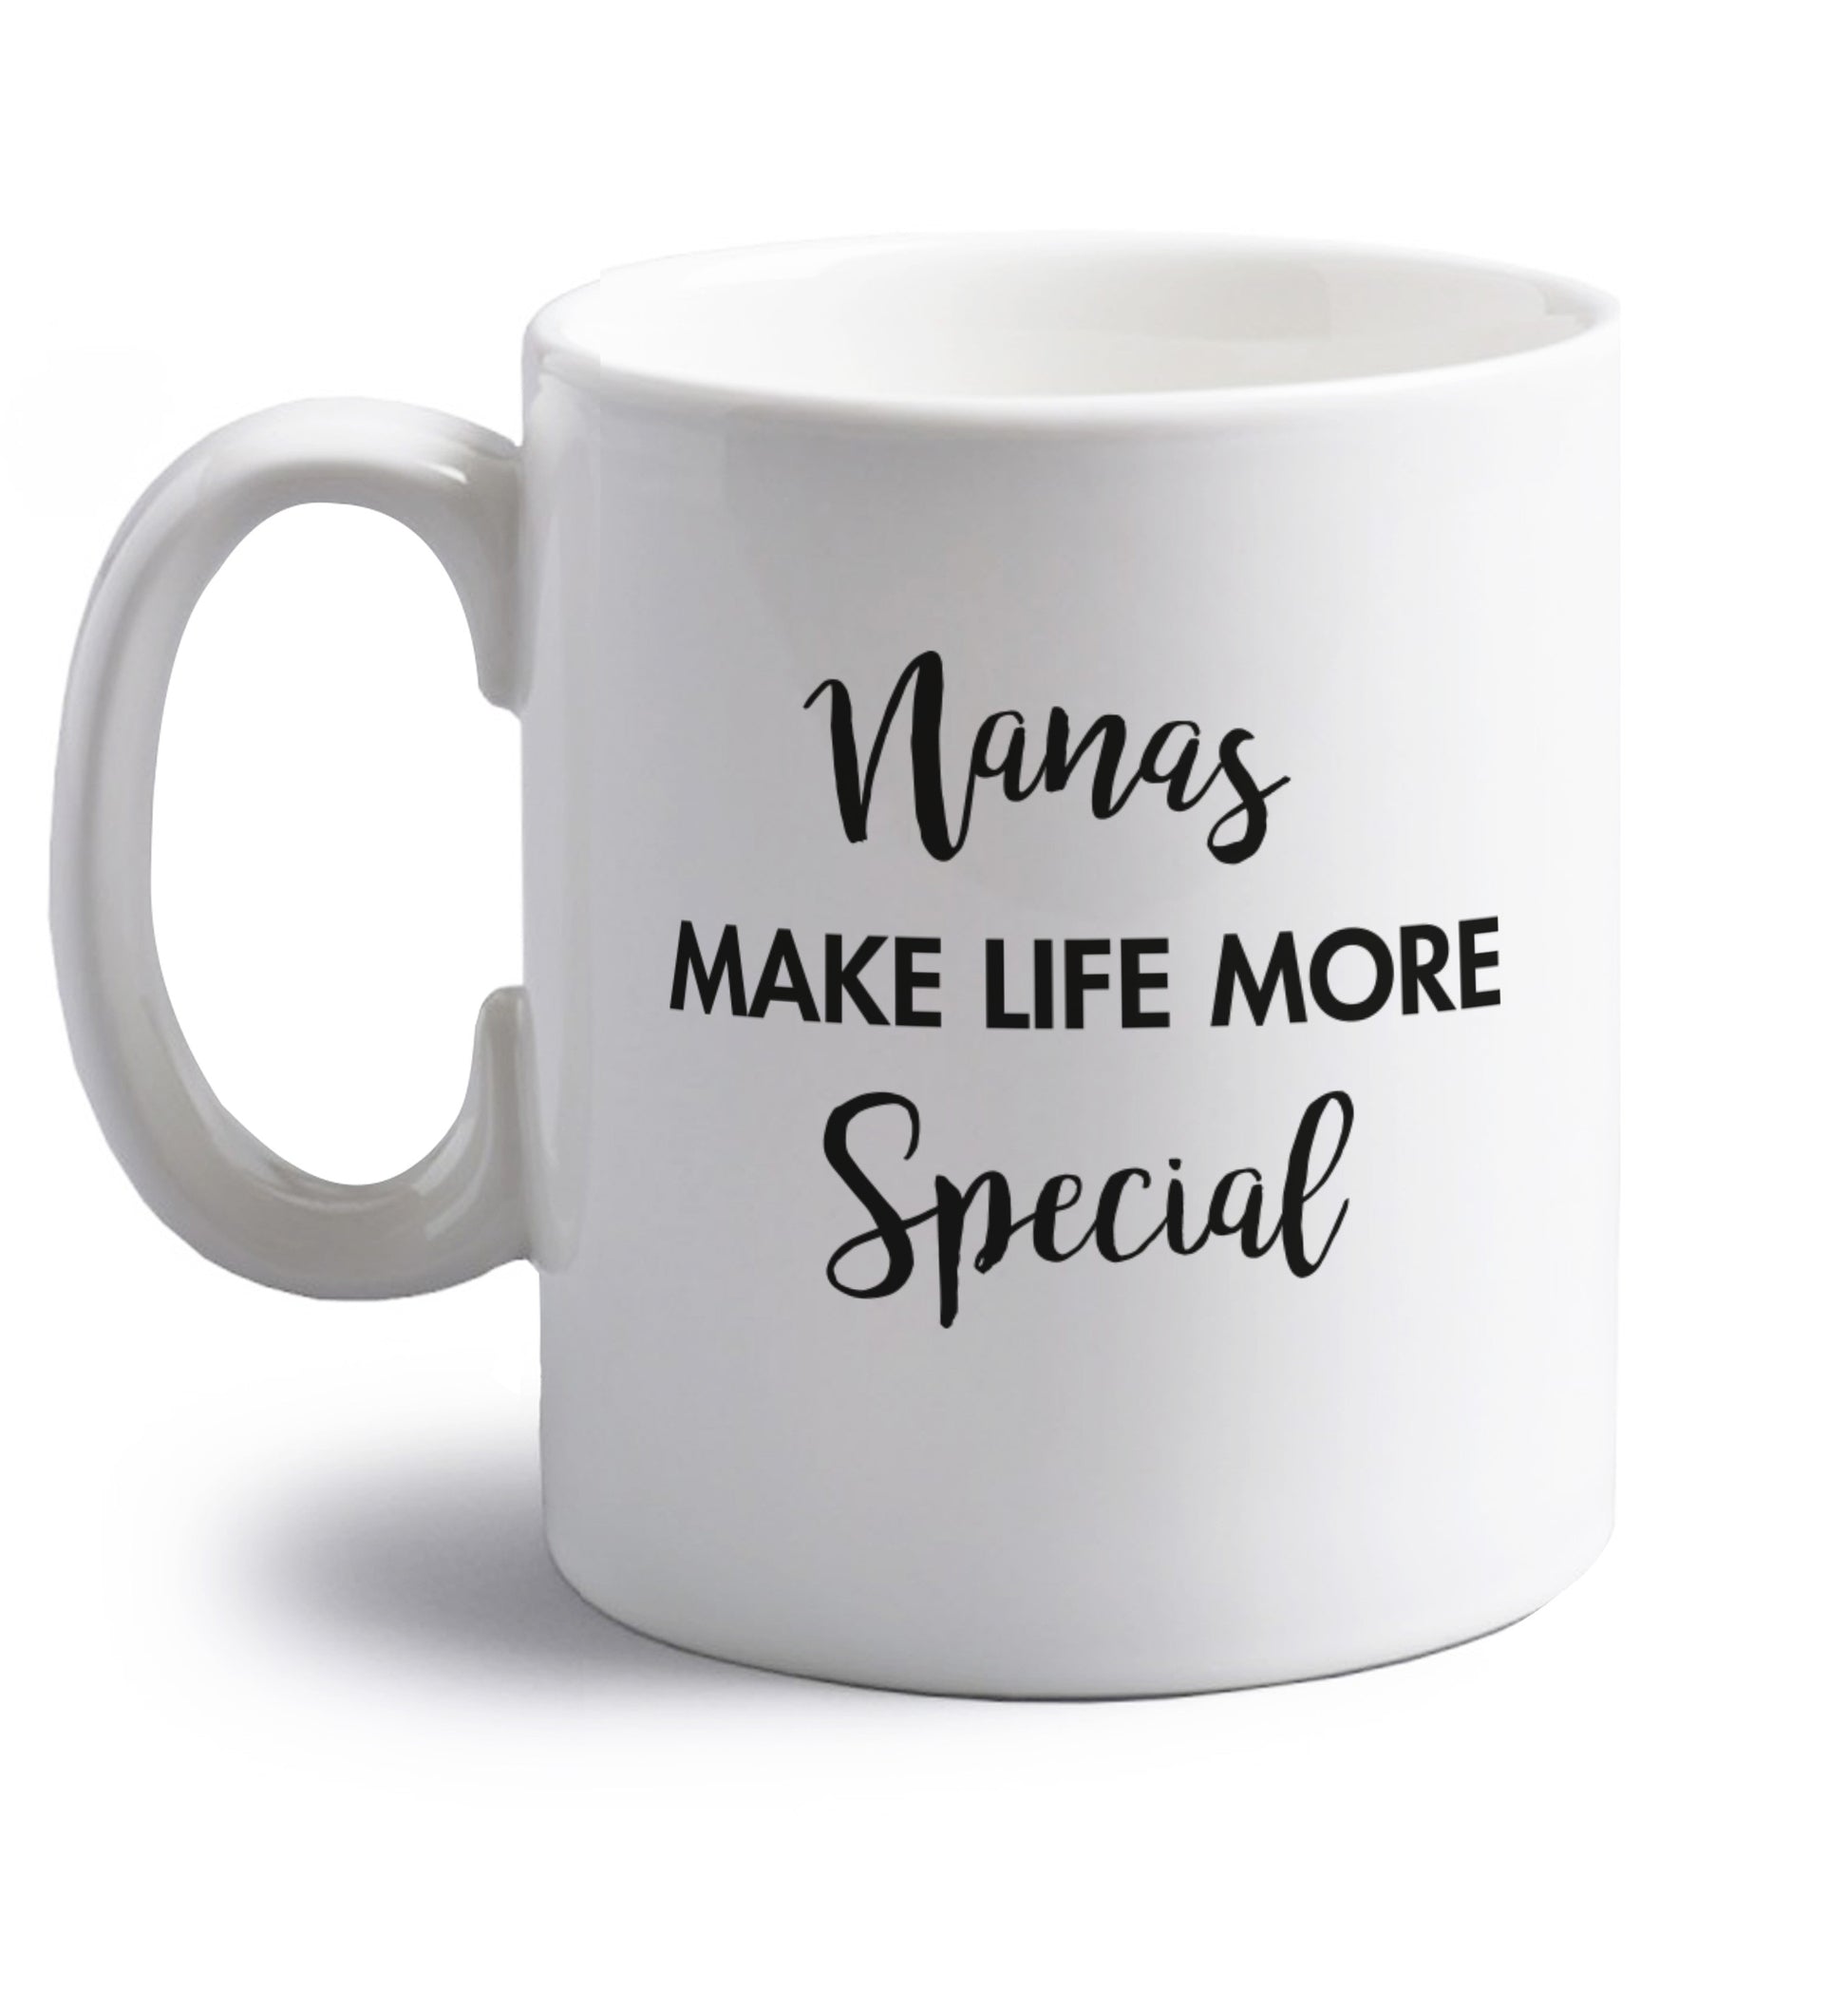 Nanas make life more special right handed white ceramic mug 